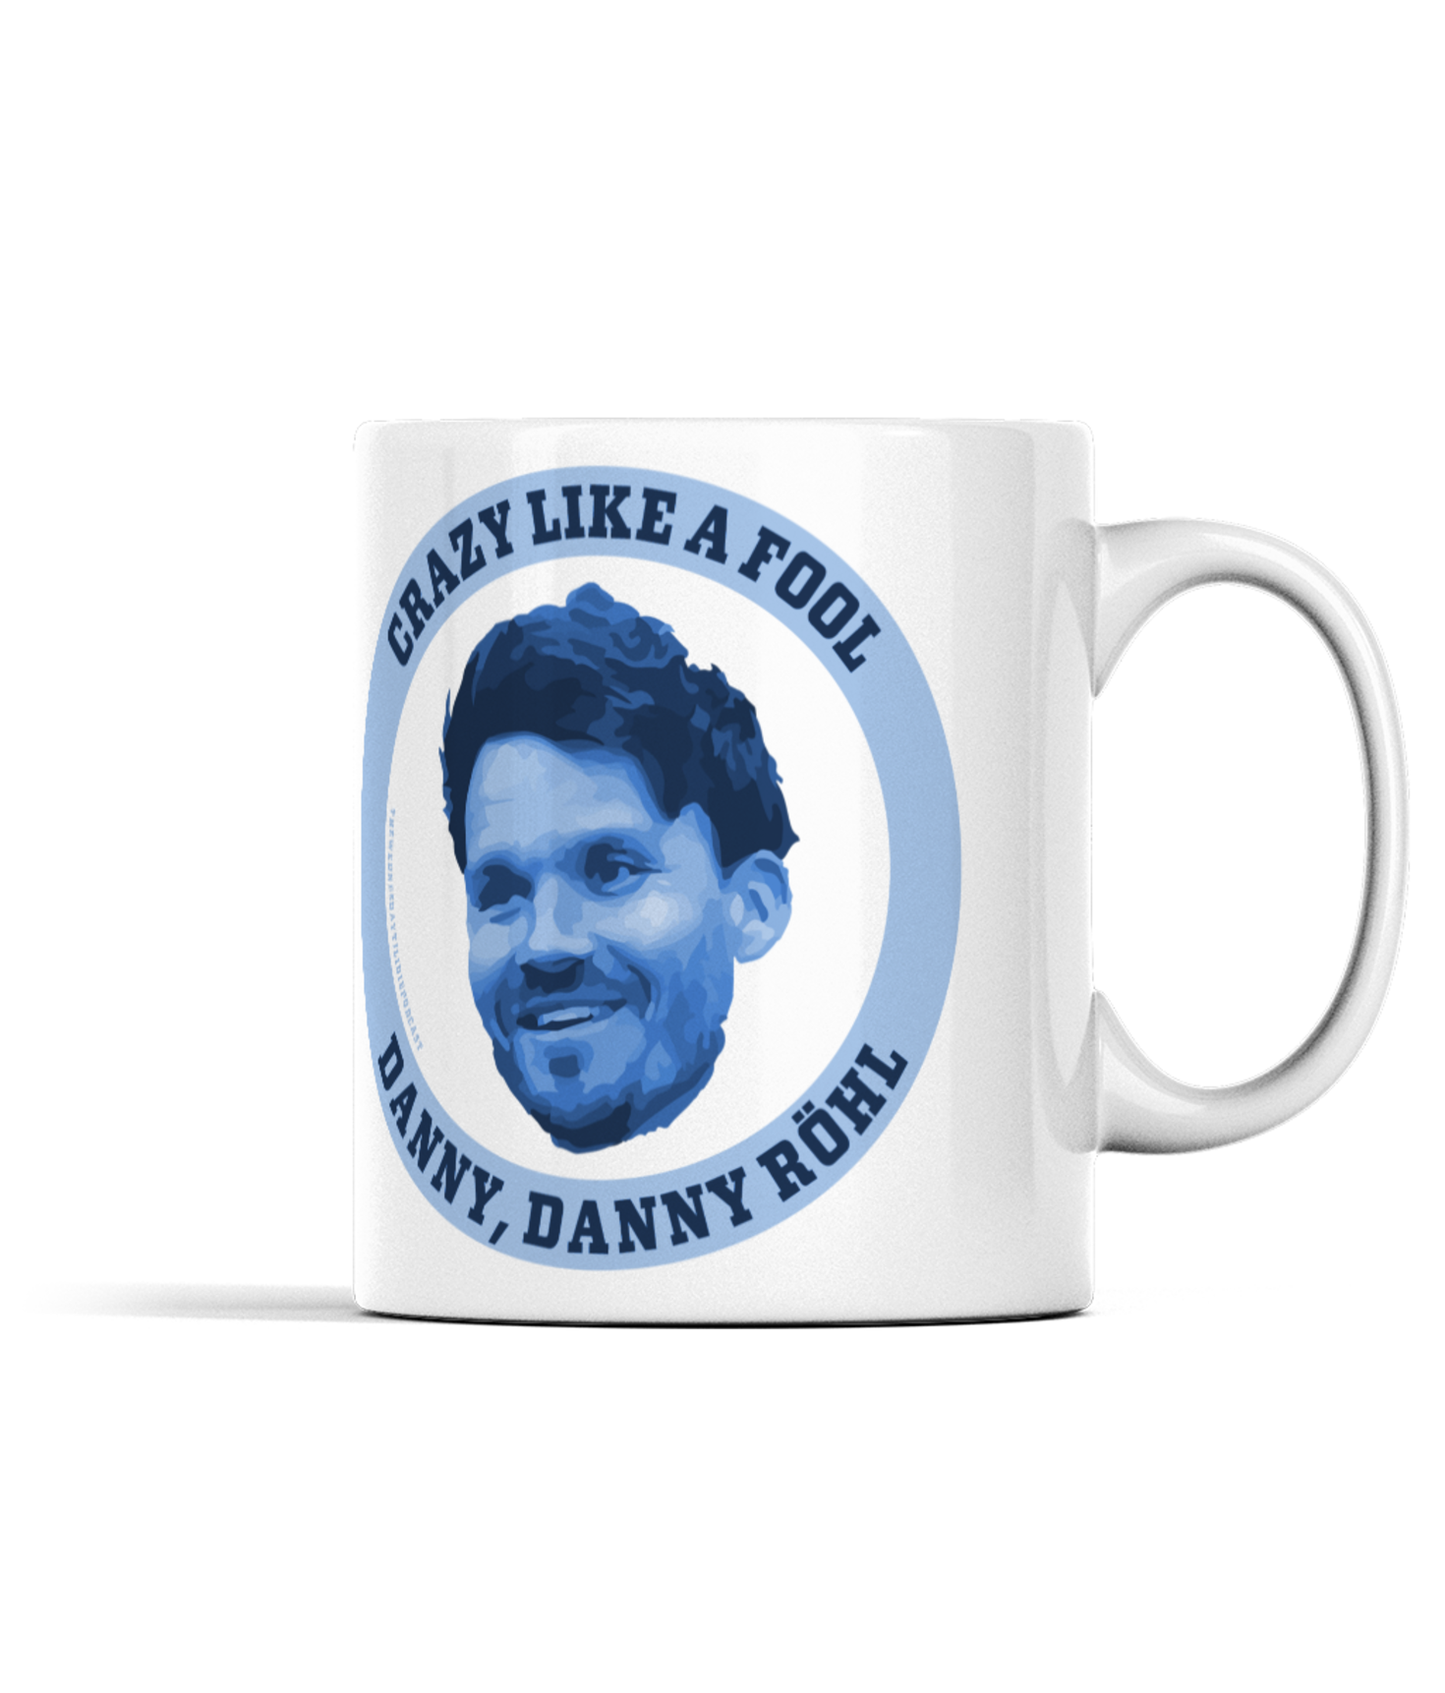 Danny, Danny Röhl - Mug